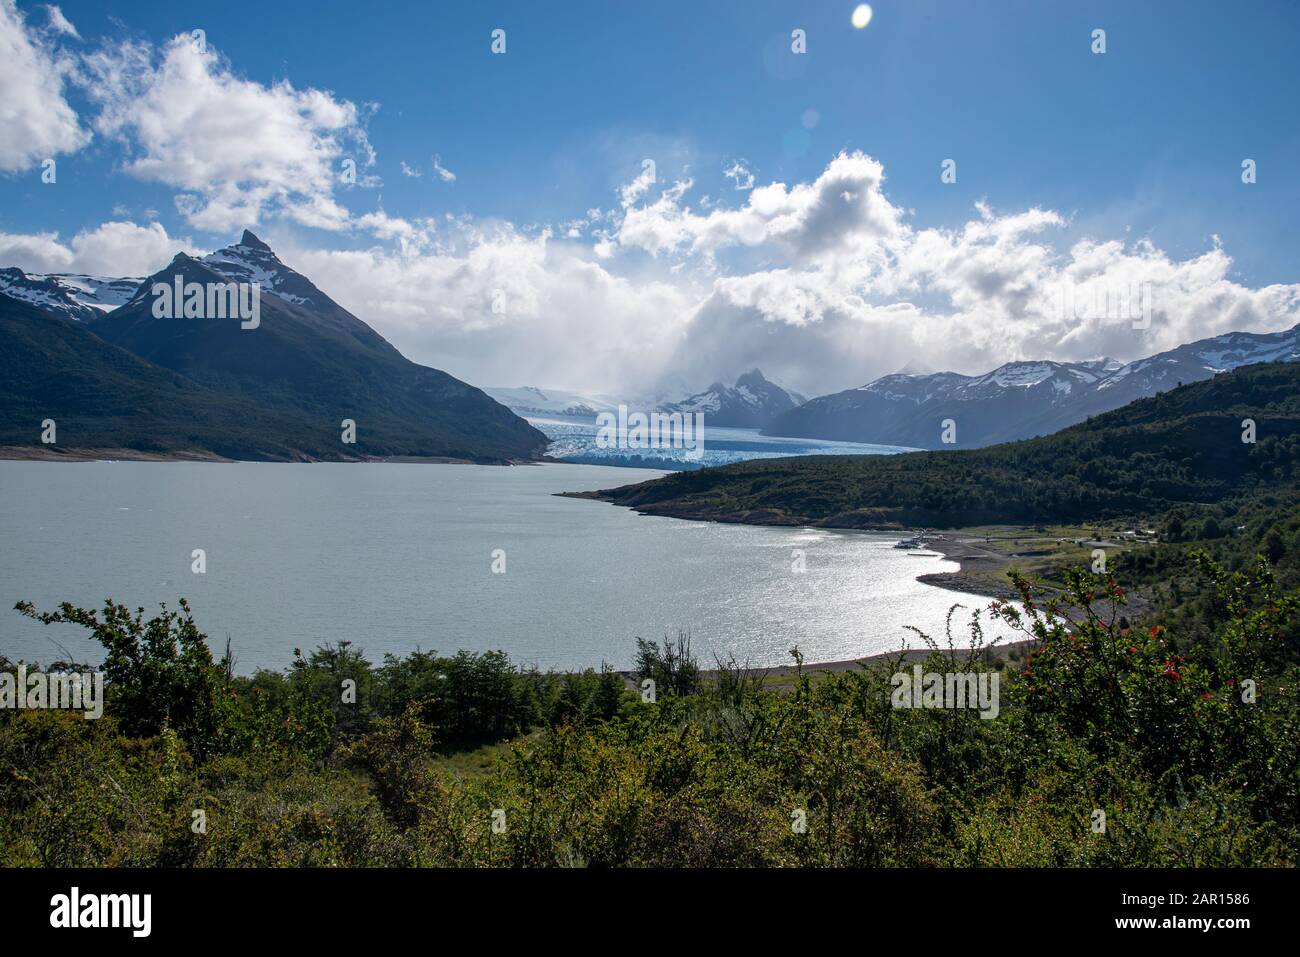 The Perito Moreno Glacier, El Calafate, Argentina Stock Photo